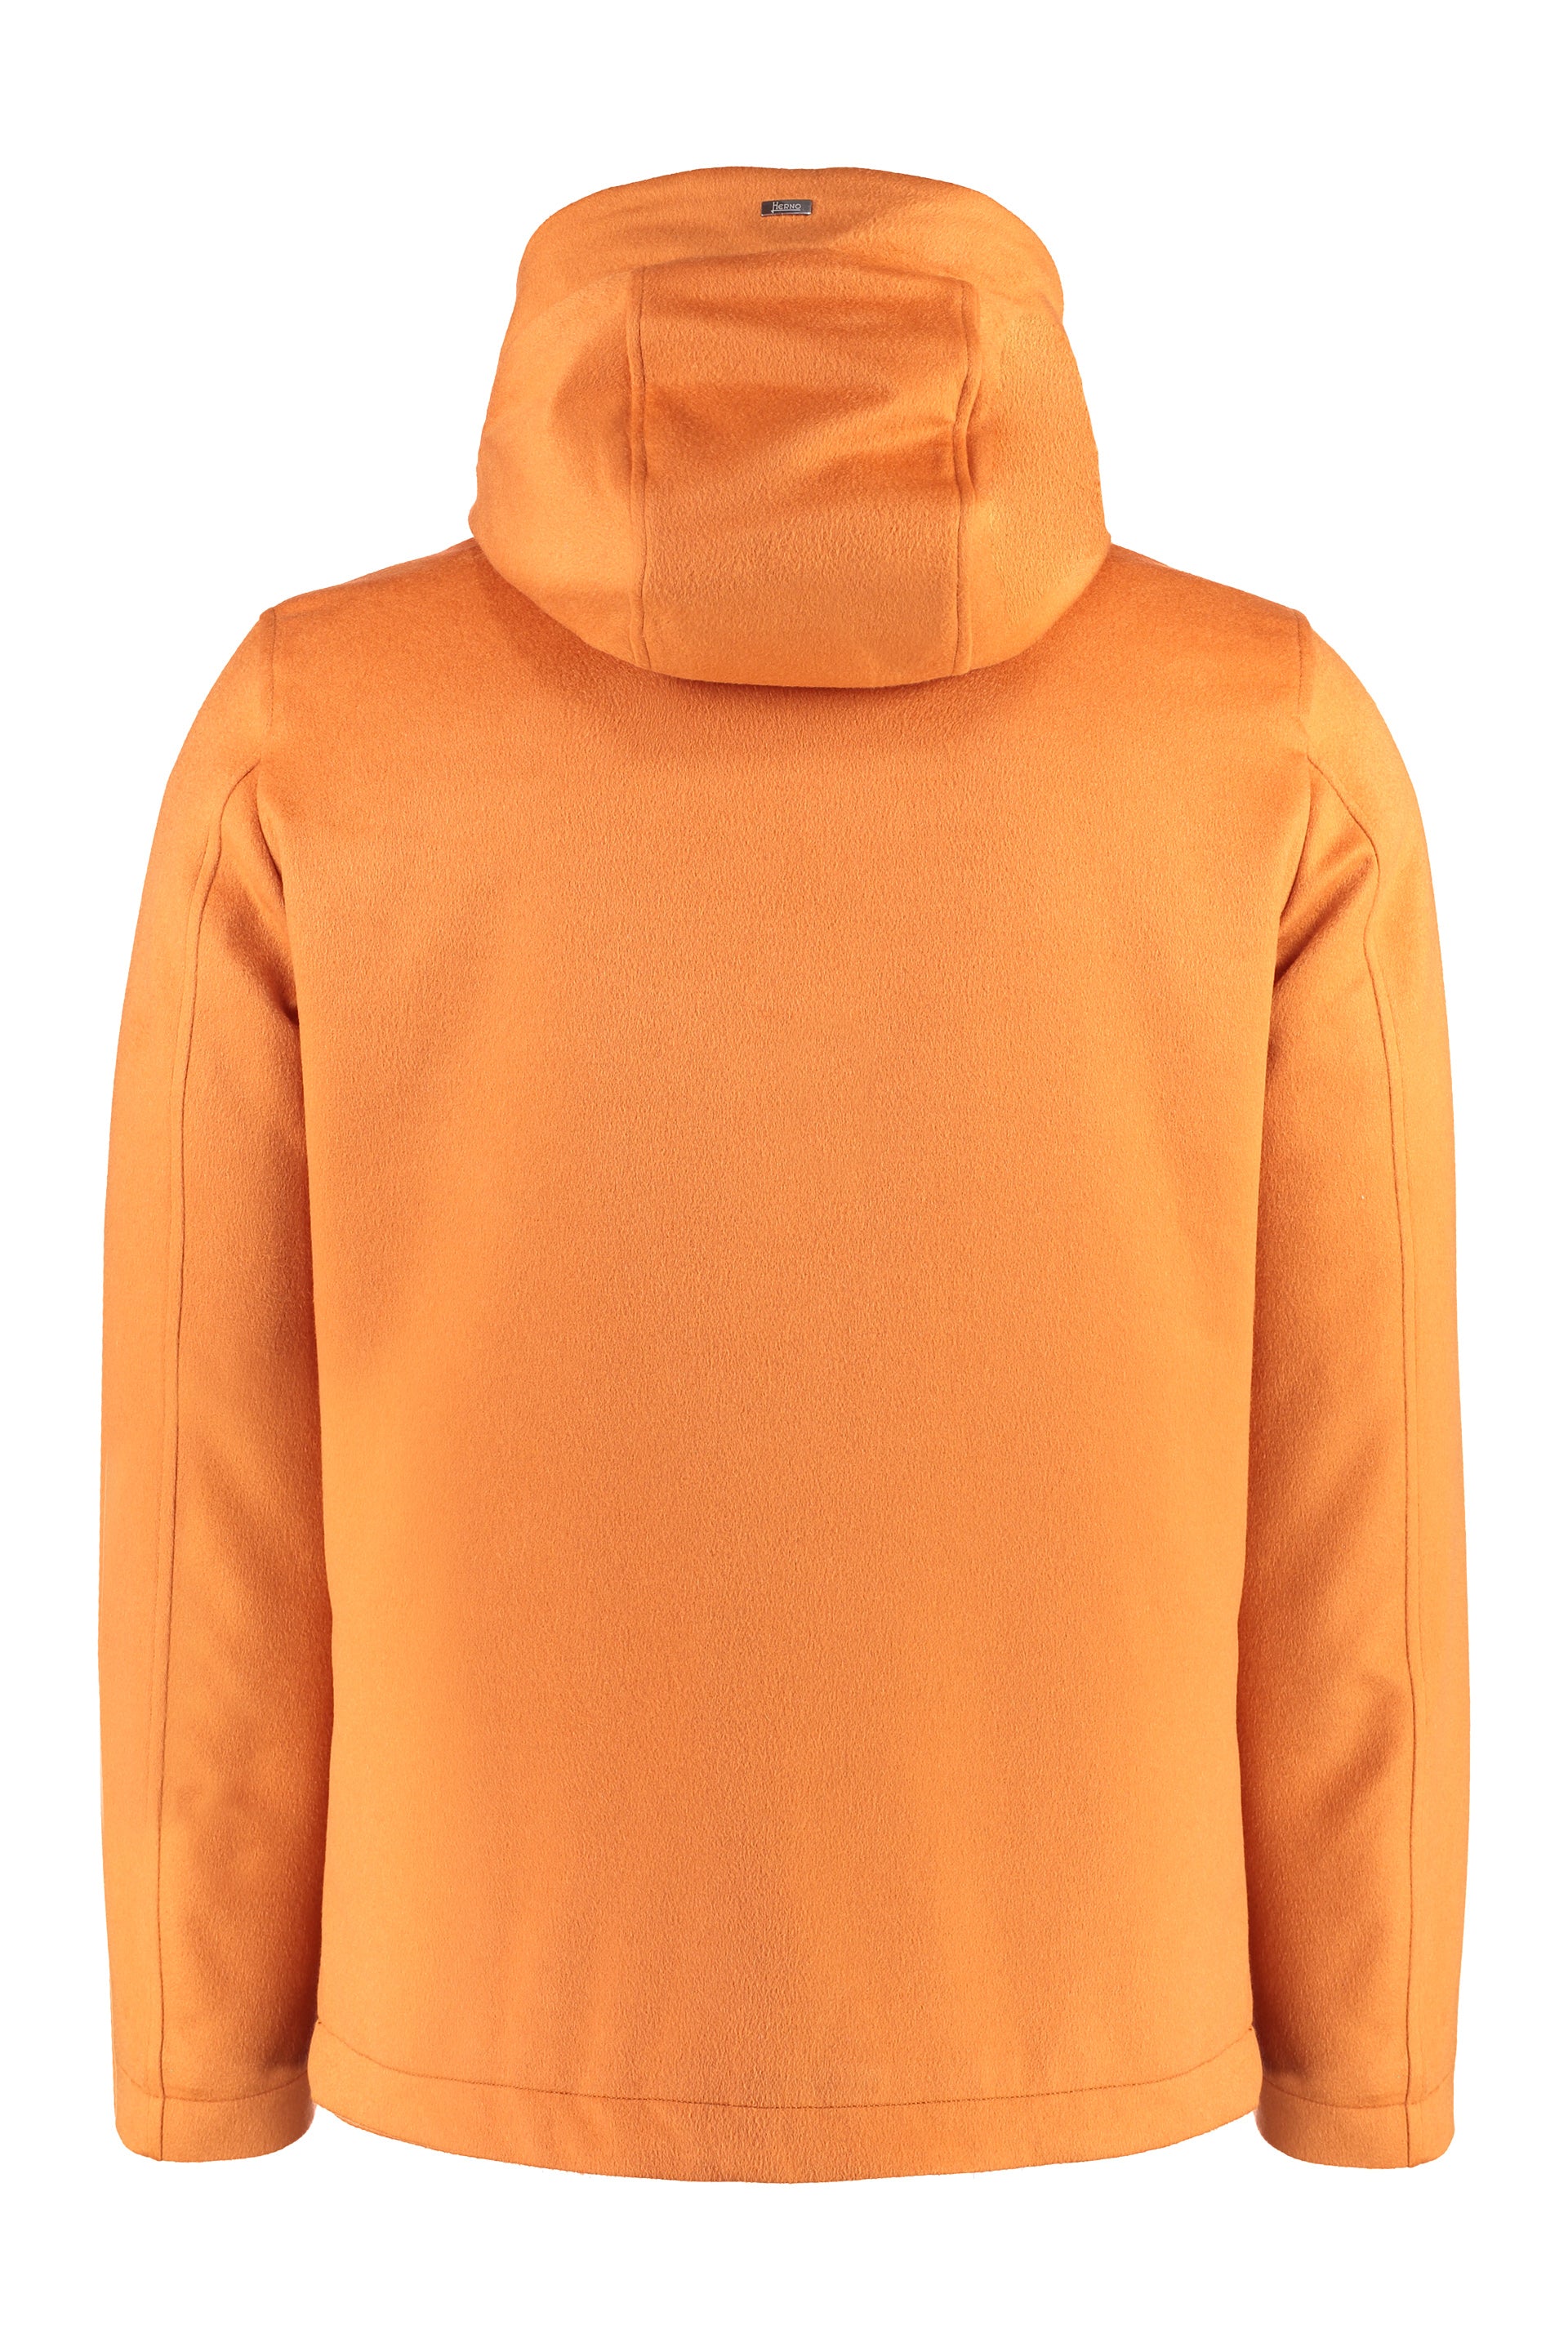 Shop Herno Adjustable Drawstring Cashmere Jacket In Orange